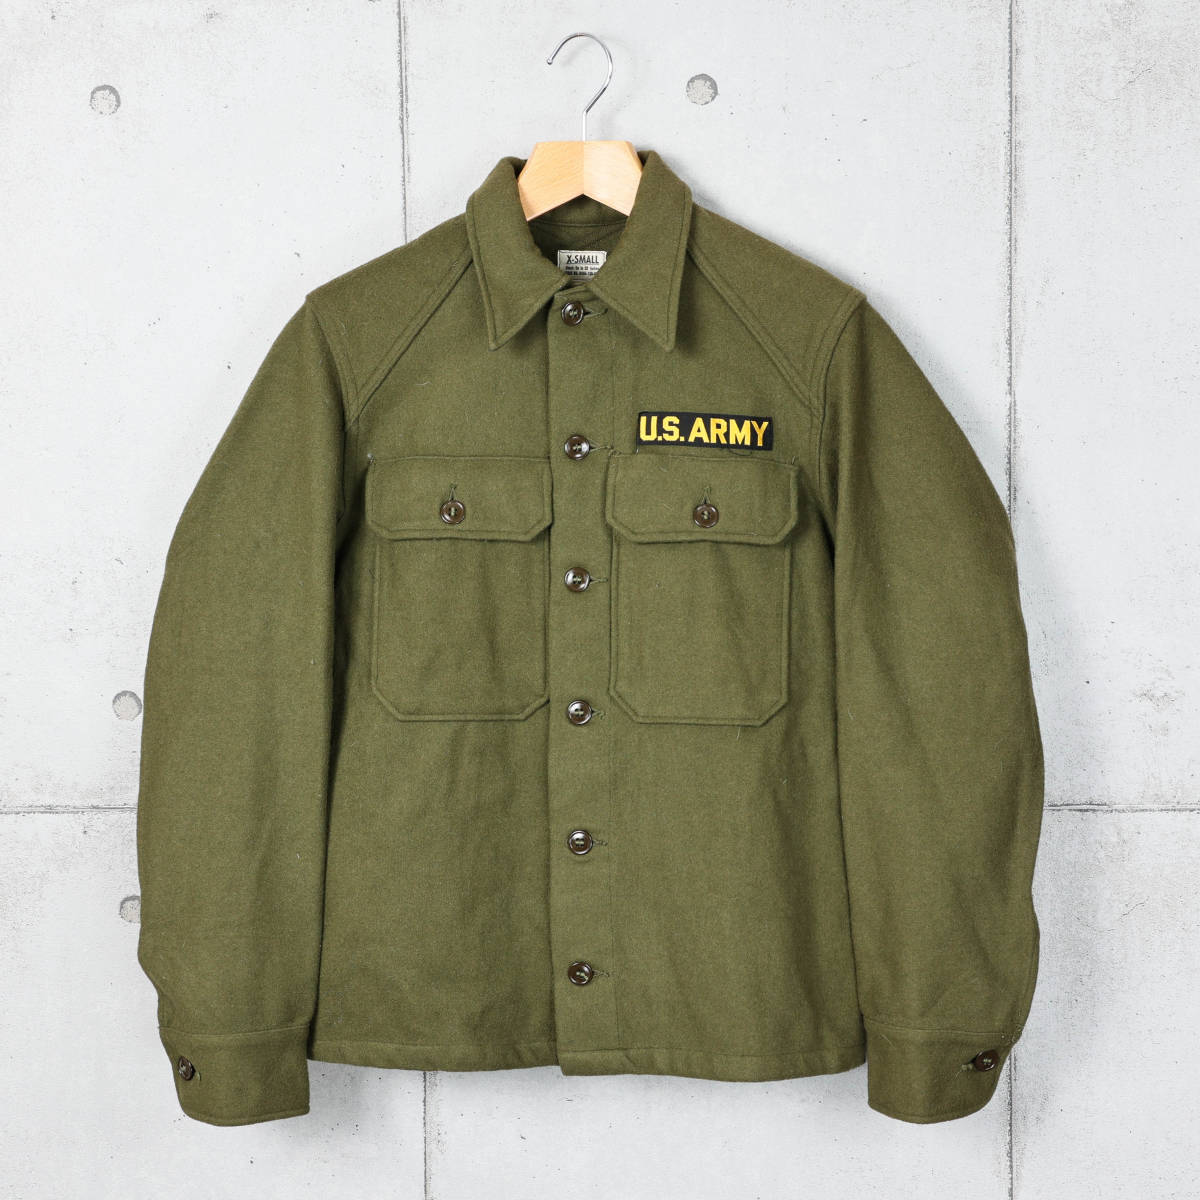 US ARMYアメリカ陸軍◆1954年製 ウールシャツ◆オリーブ◆サイズXS_画像1